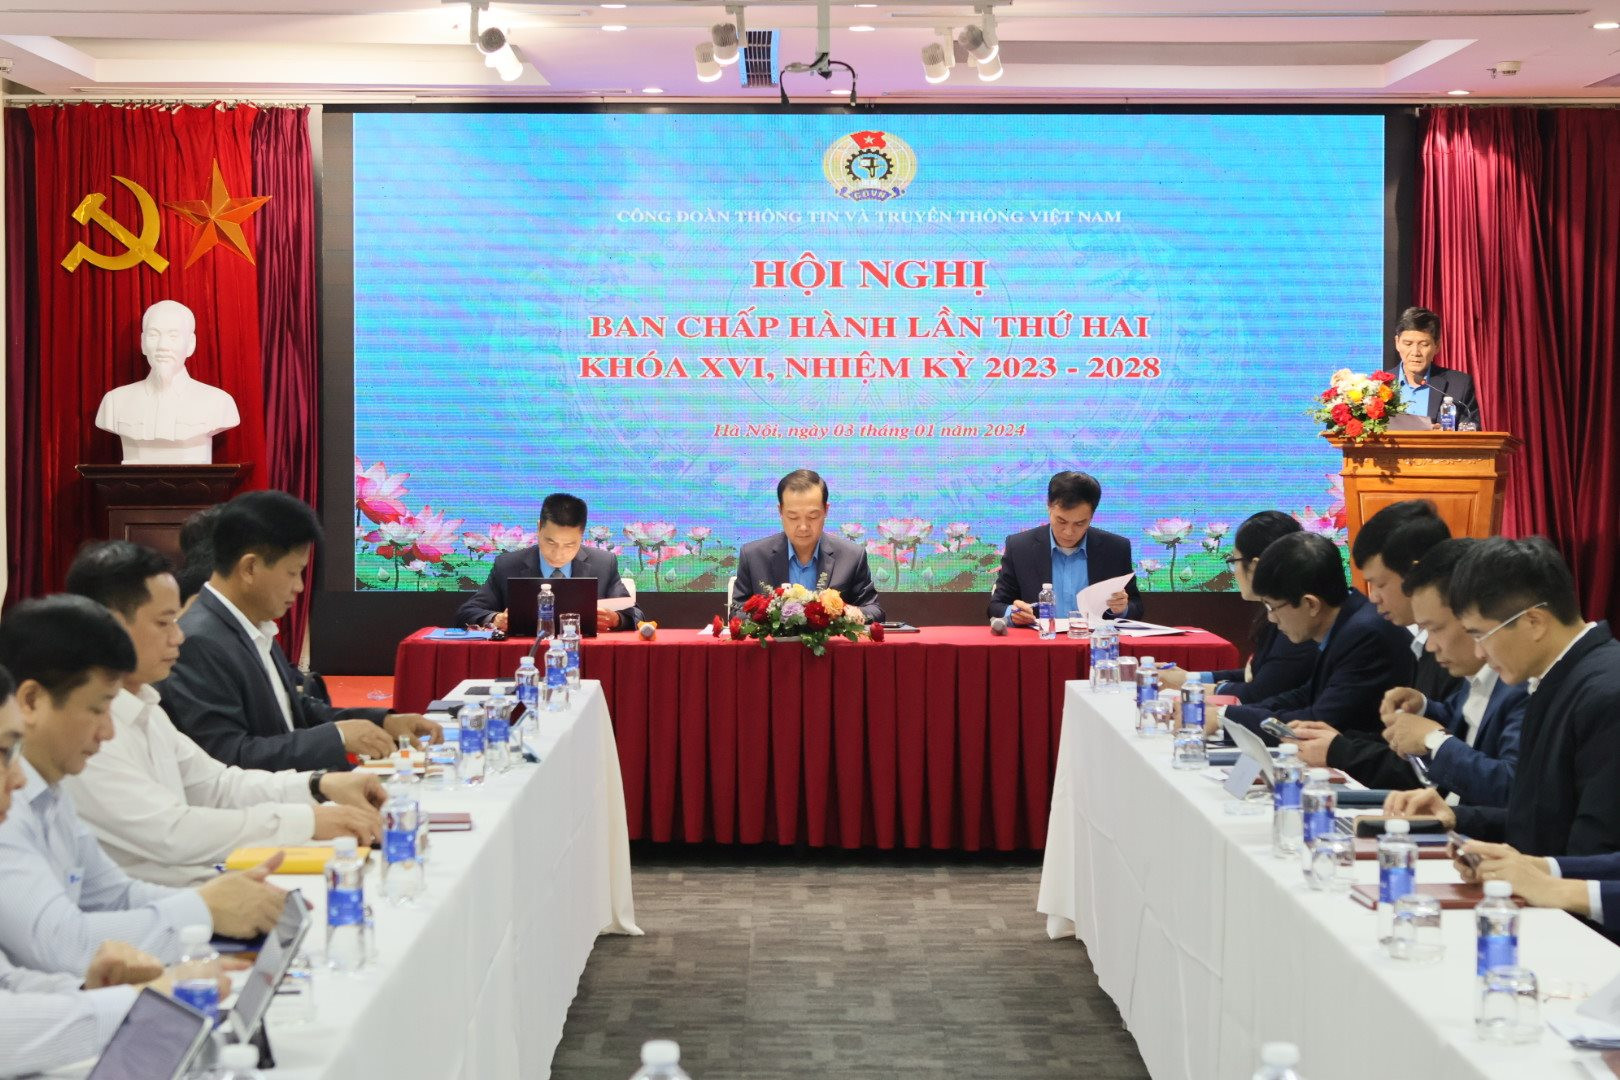 Công đoàn TT&TT Việt Nam tổ chức Hội nghị lần thứ hai Ban chấp hành khoá XVI, nhiệm kỳ 2023 - 2028- Ảnh 2.